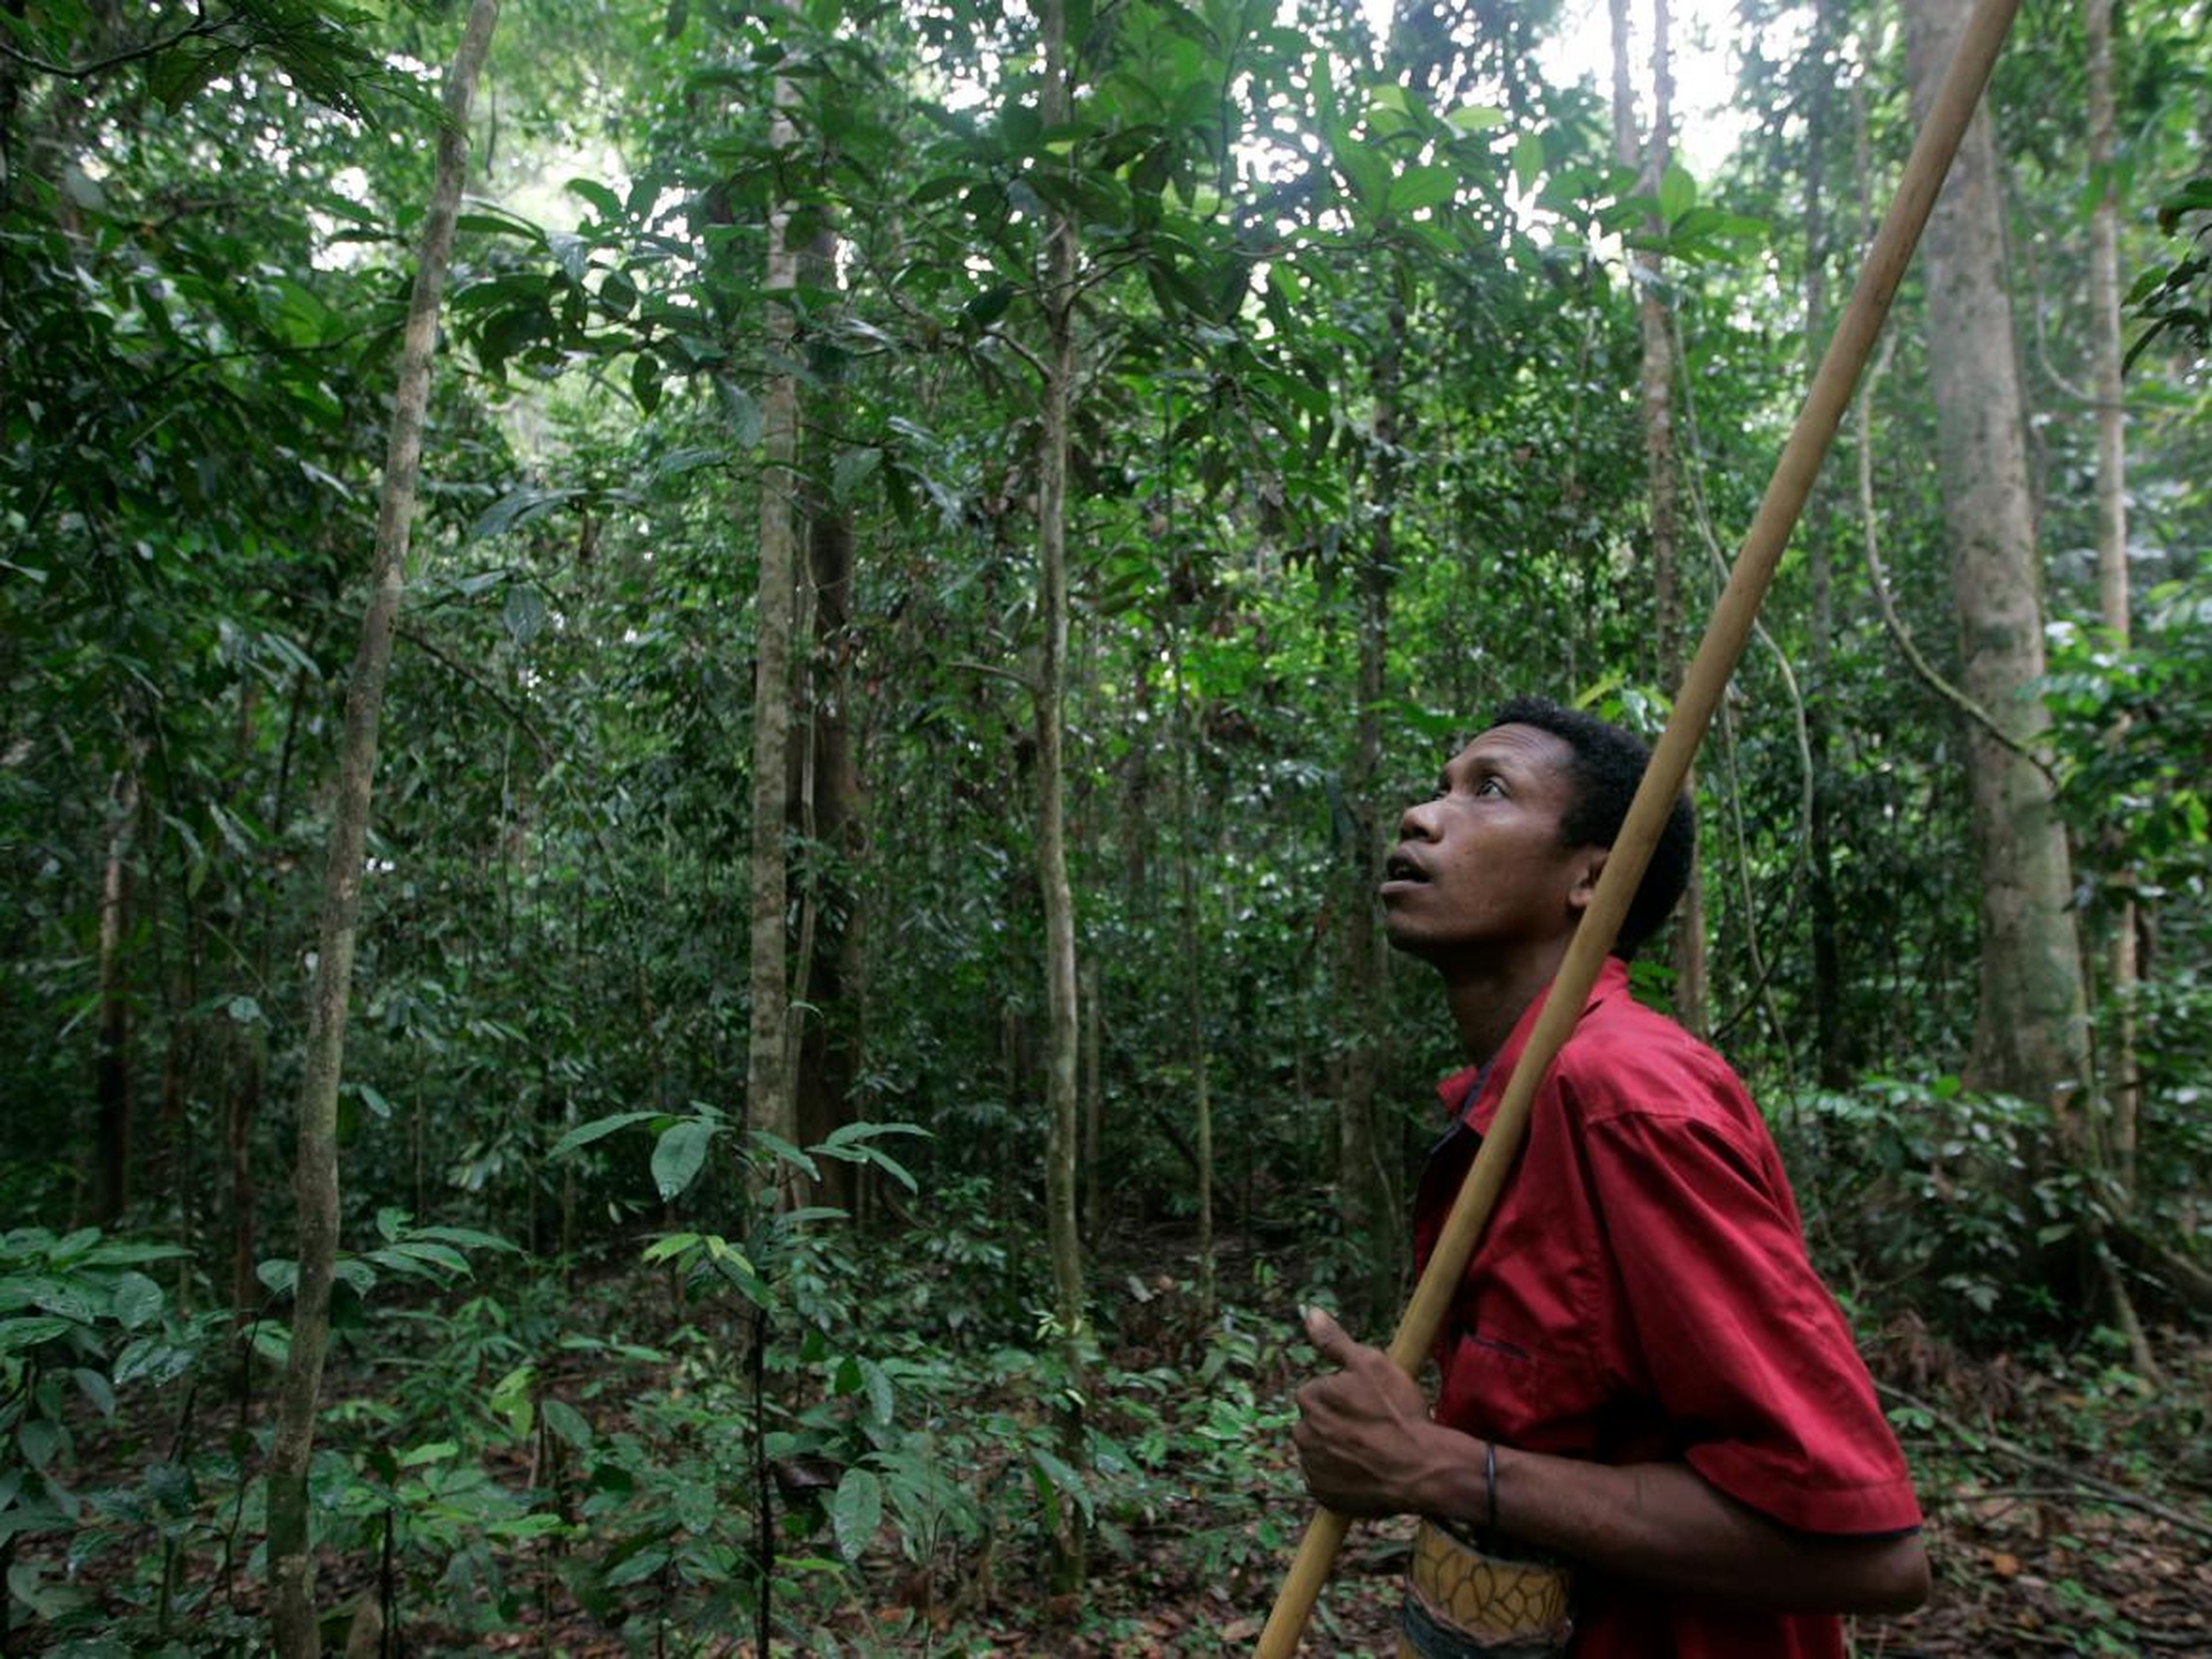 Un hombre de la tribu Batek caza en una selva cerca del Parque Nacional Kuala Koh en el estado malaysiano de Kelantan, el 21 de octubre de 2009.